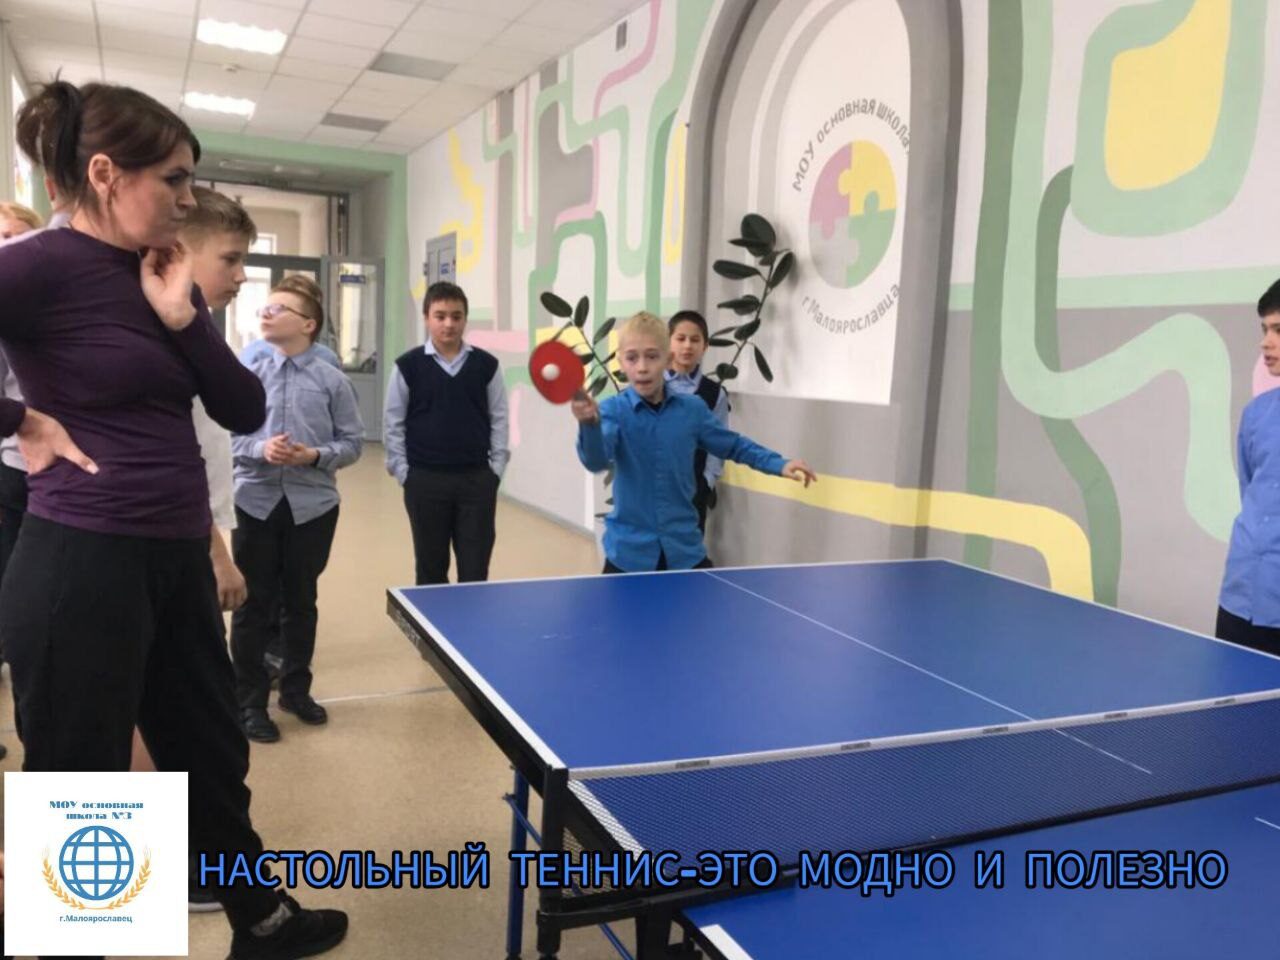 Настольный теннис - ЭТО МОДНО И ПОЛЕЗНО!.